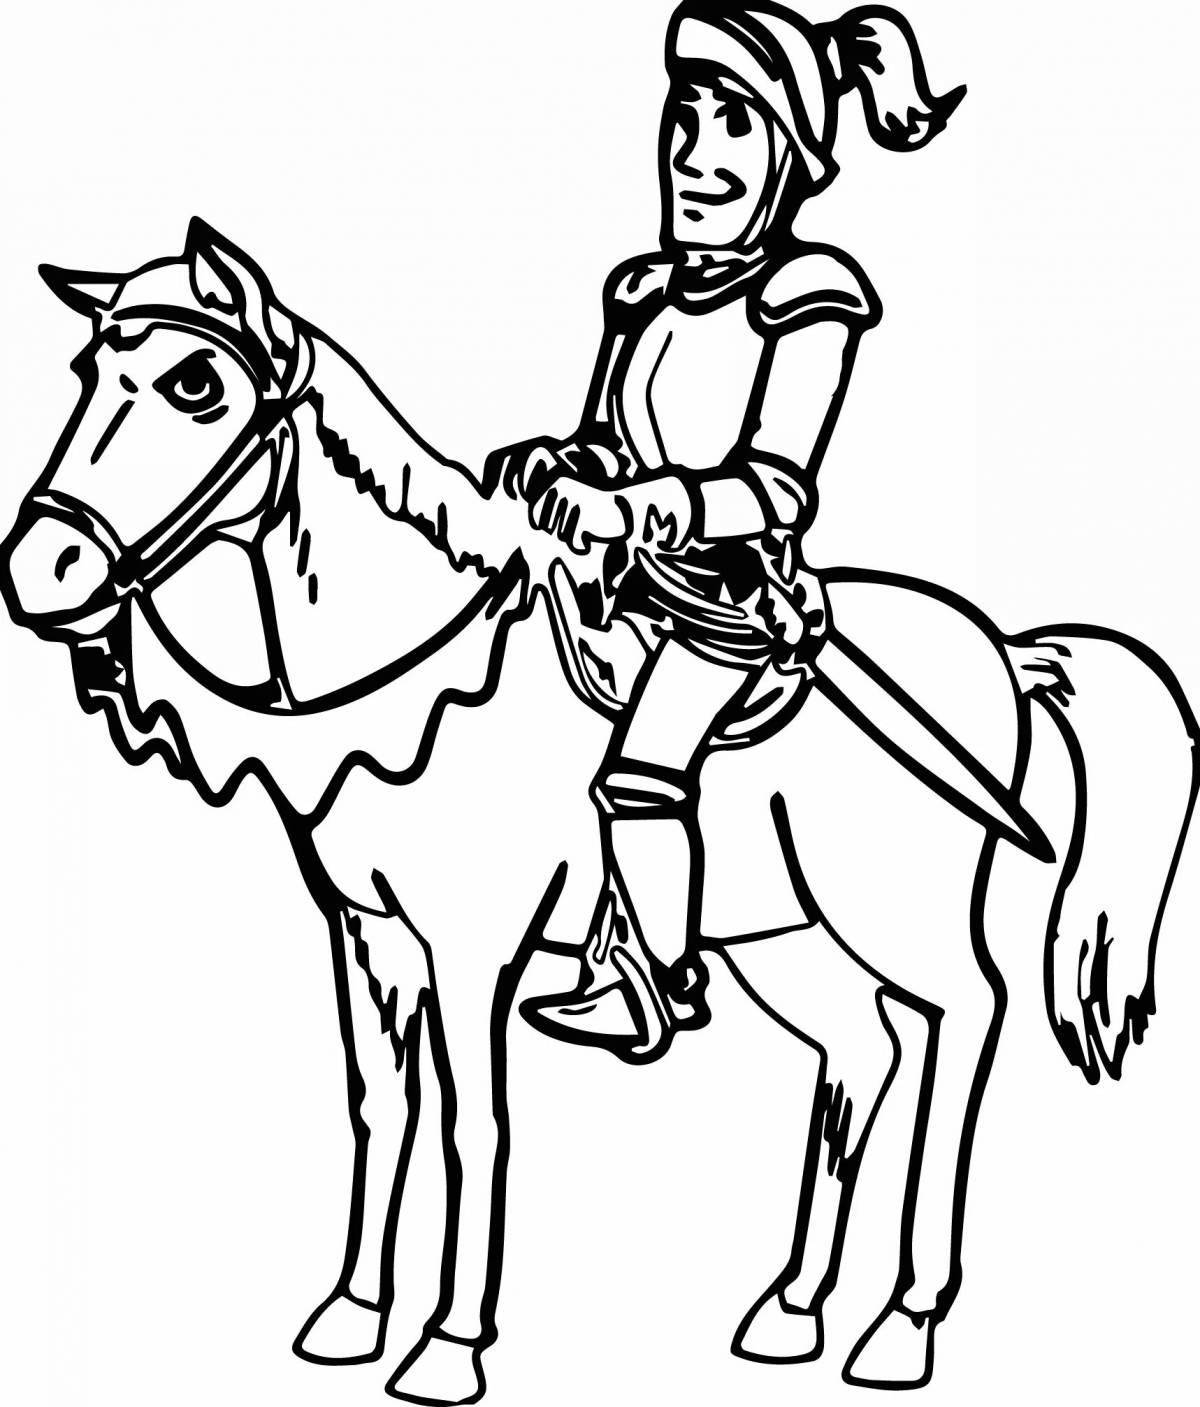 Благородная раскраска рыцарь на коне